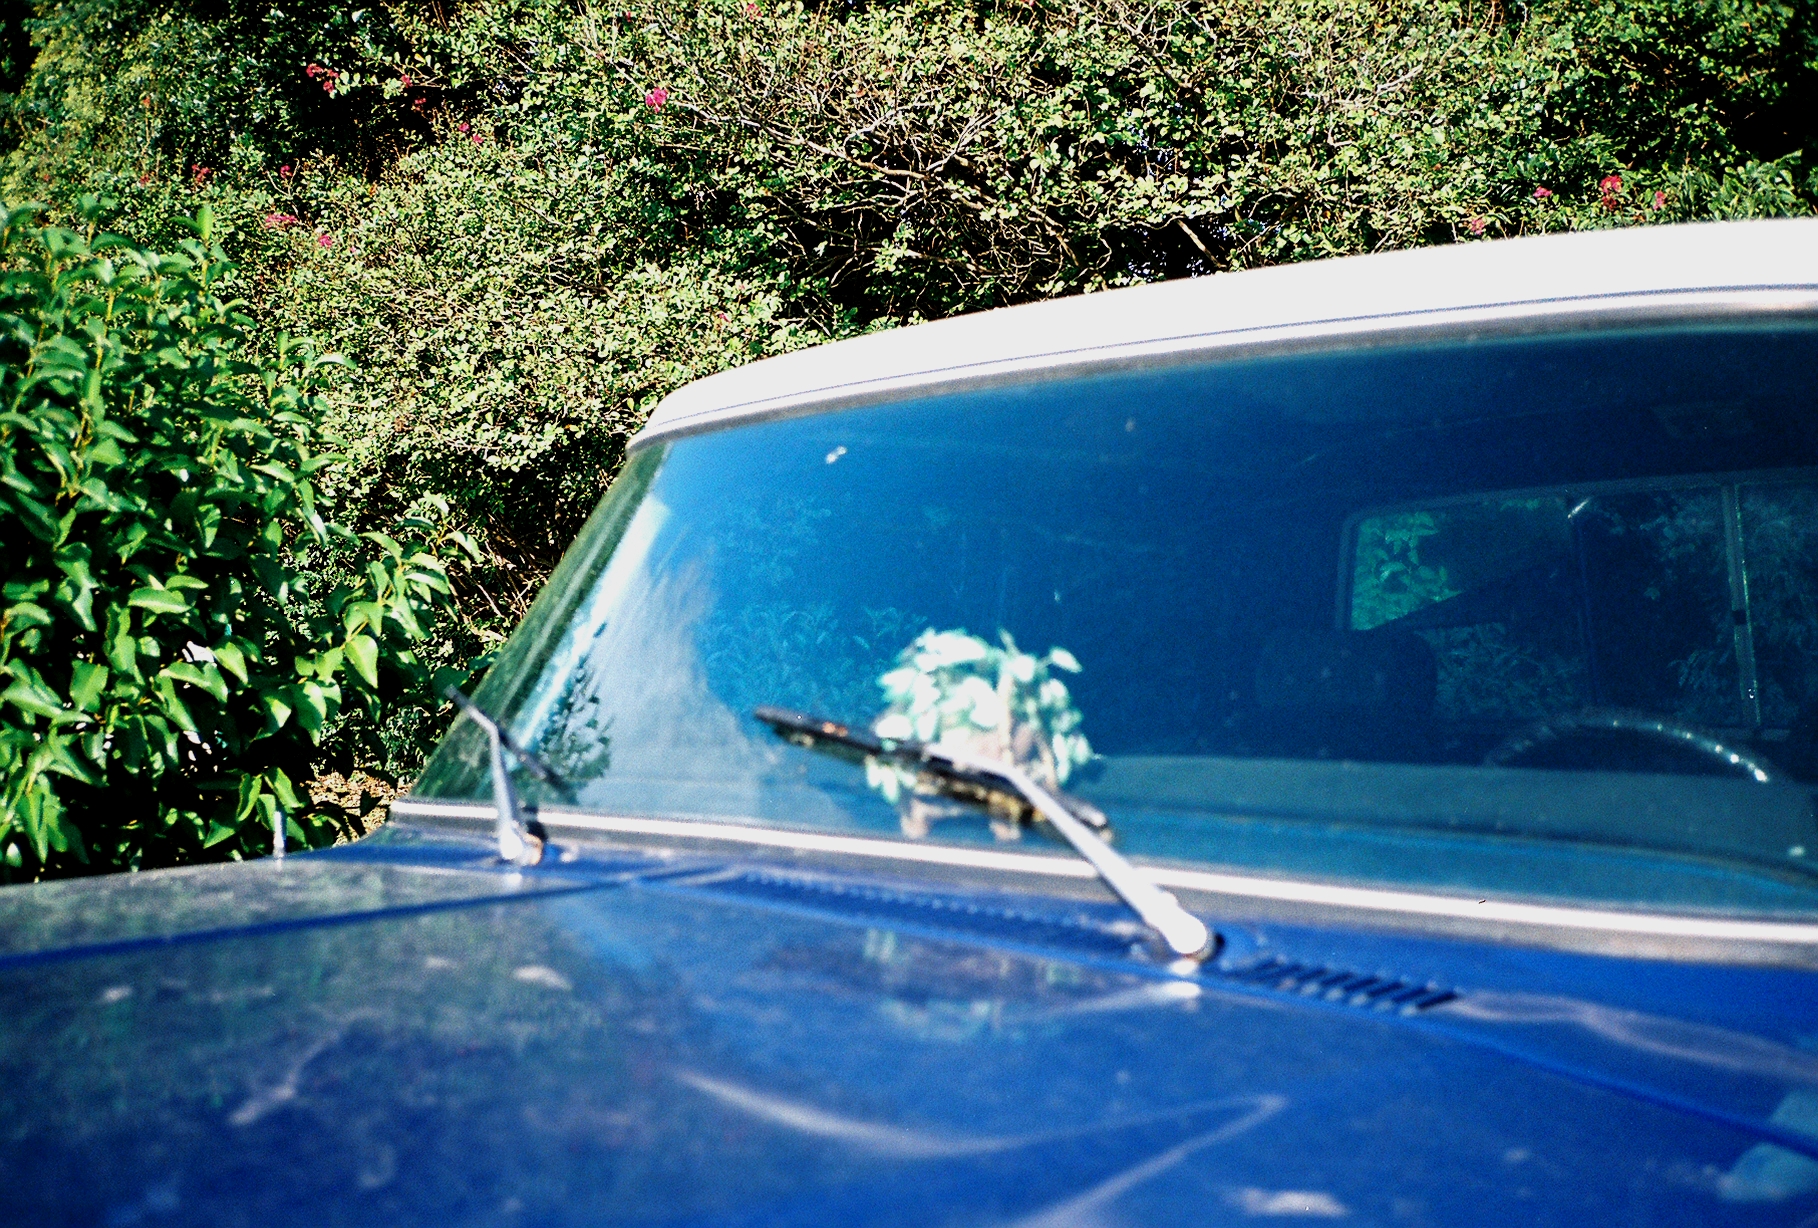 Blue Pick Up with Floral | Baton Rouge LA | 2007